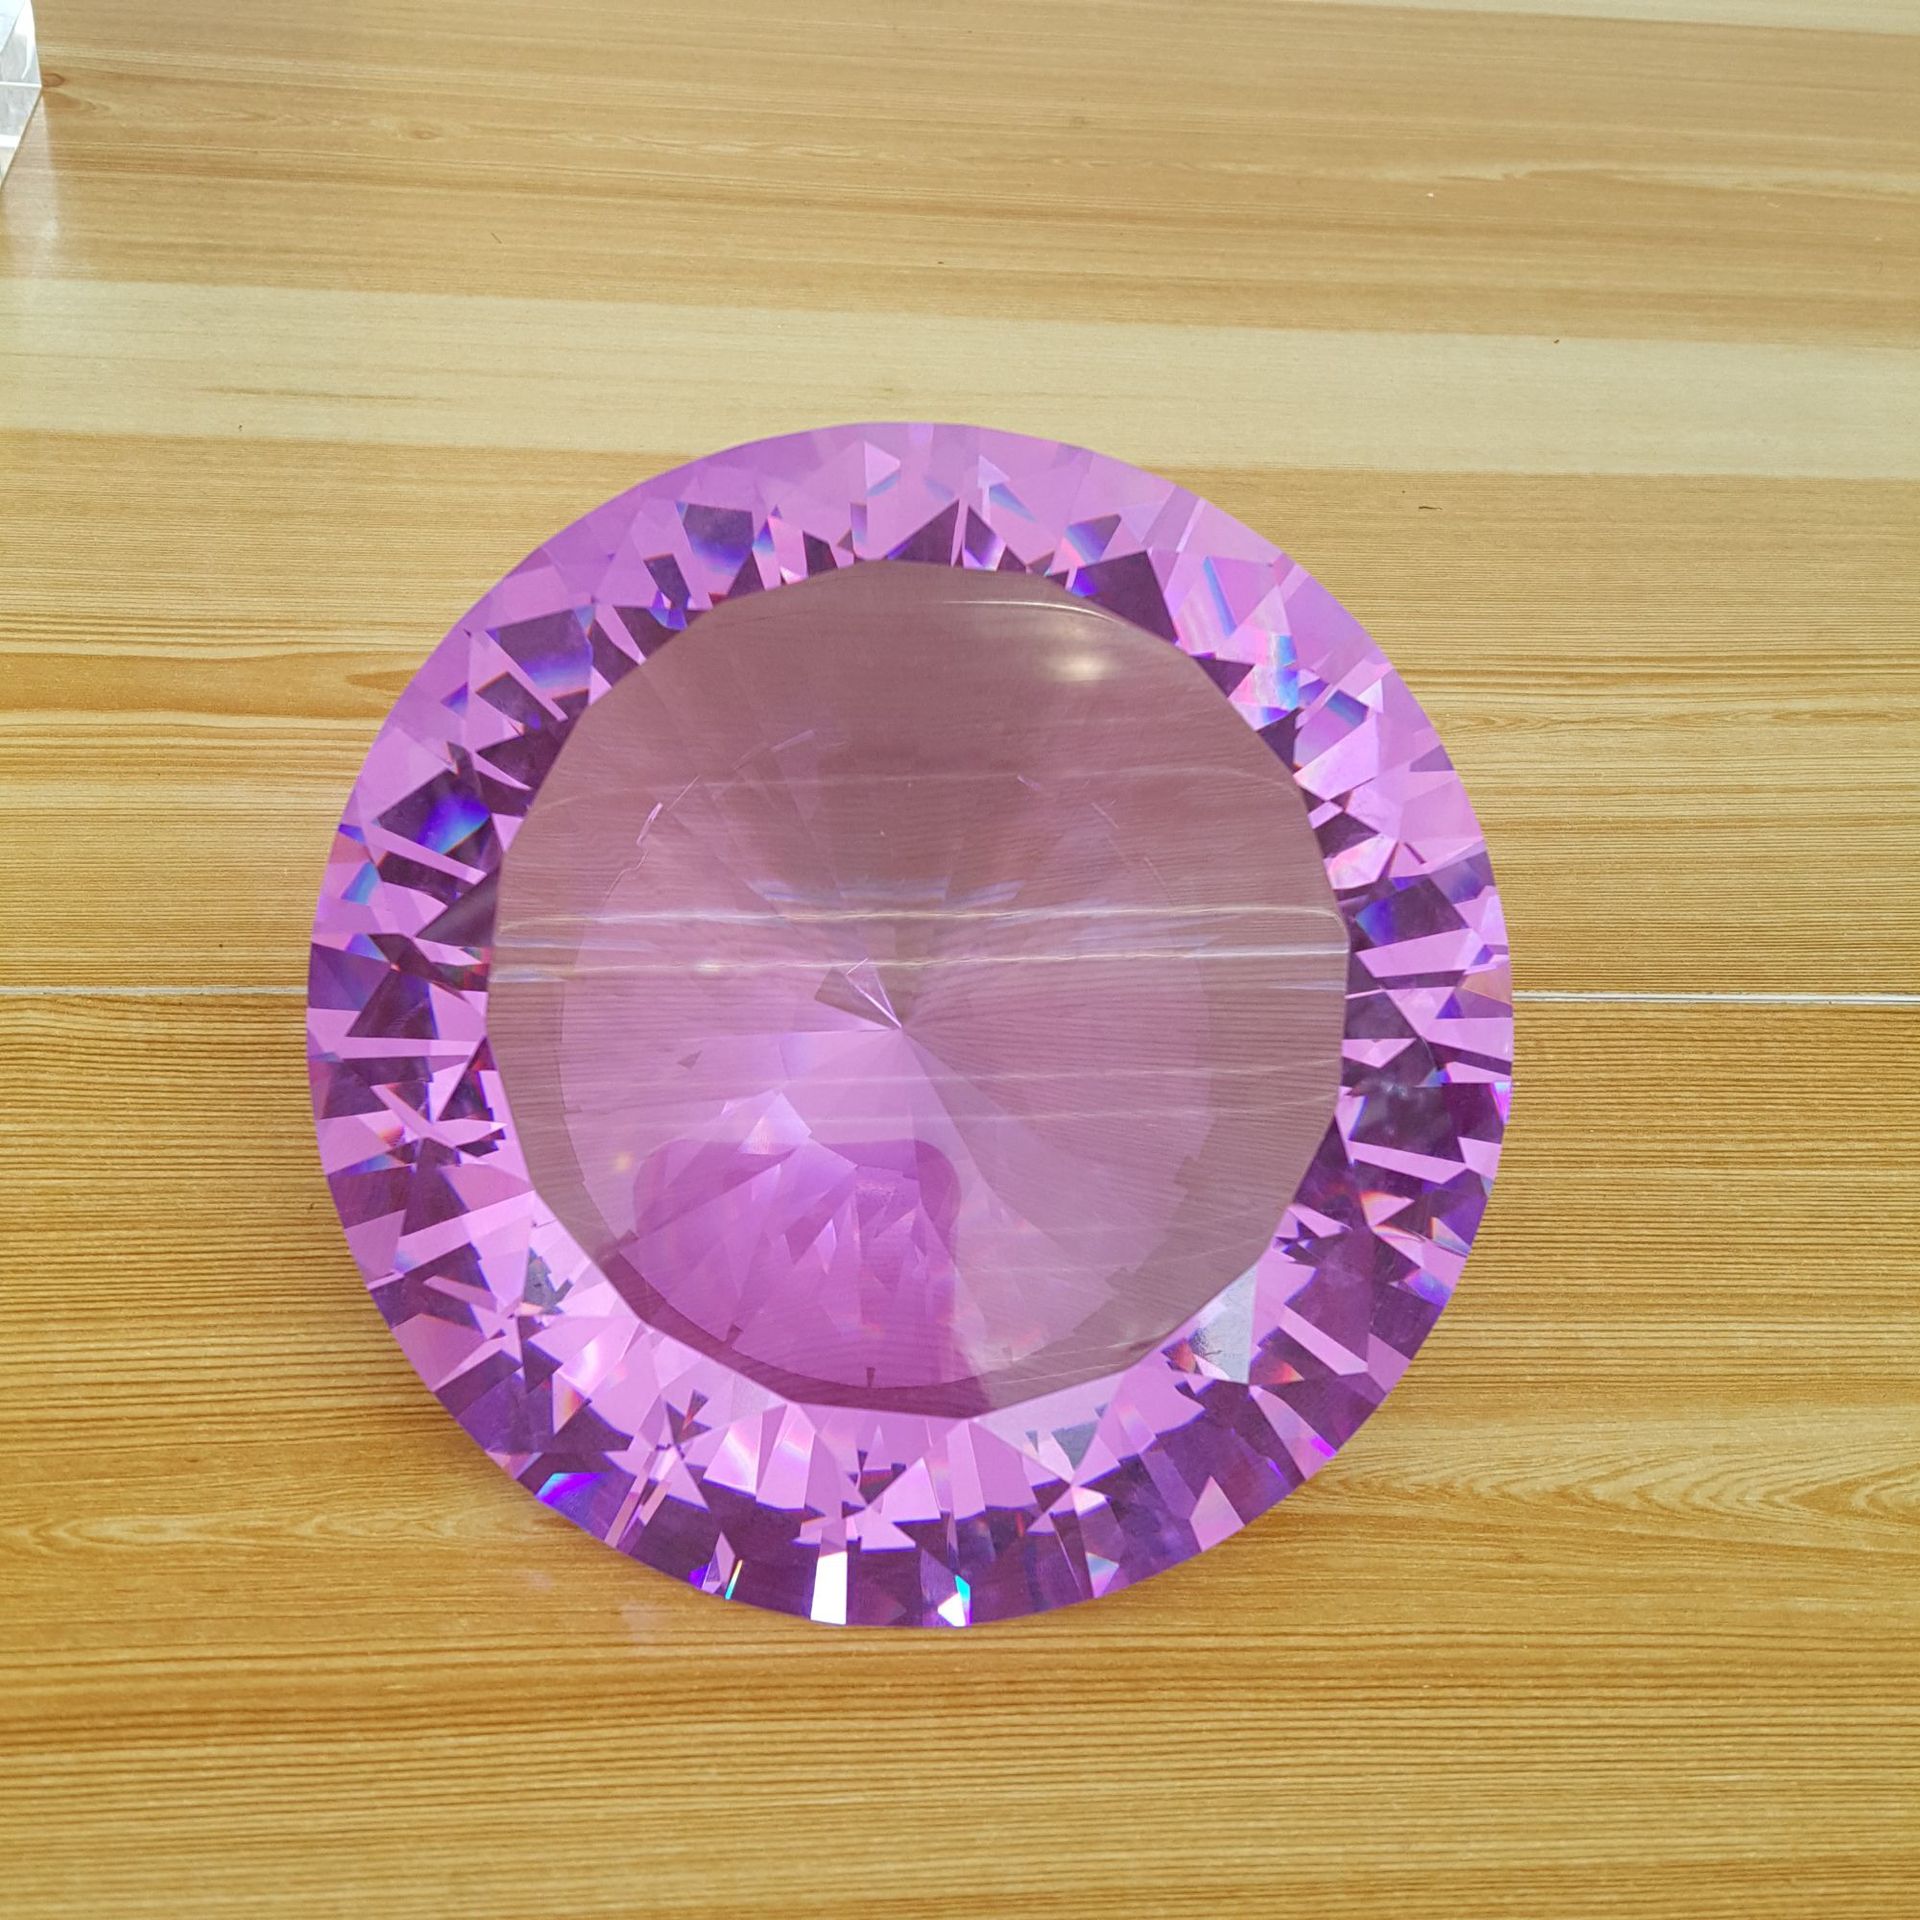 15cm彩色人造水晶玻璃钻石裸钻k9商务礼品家居工艺品礼物柜台摆件